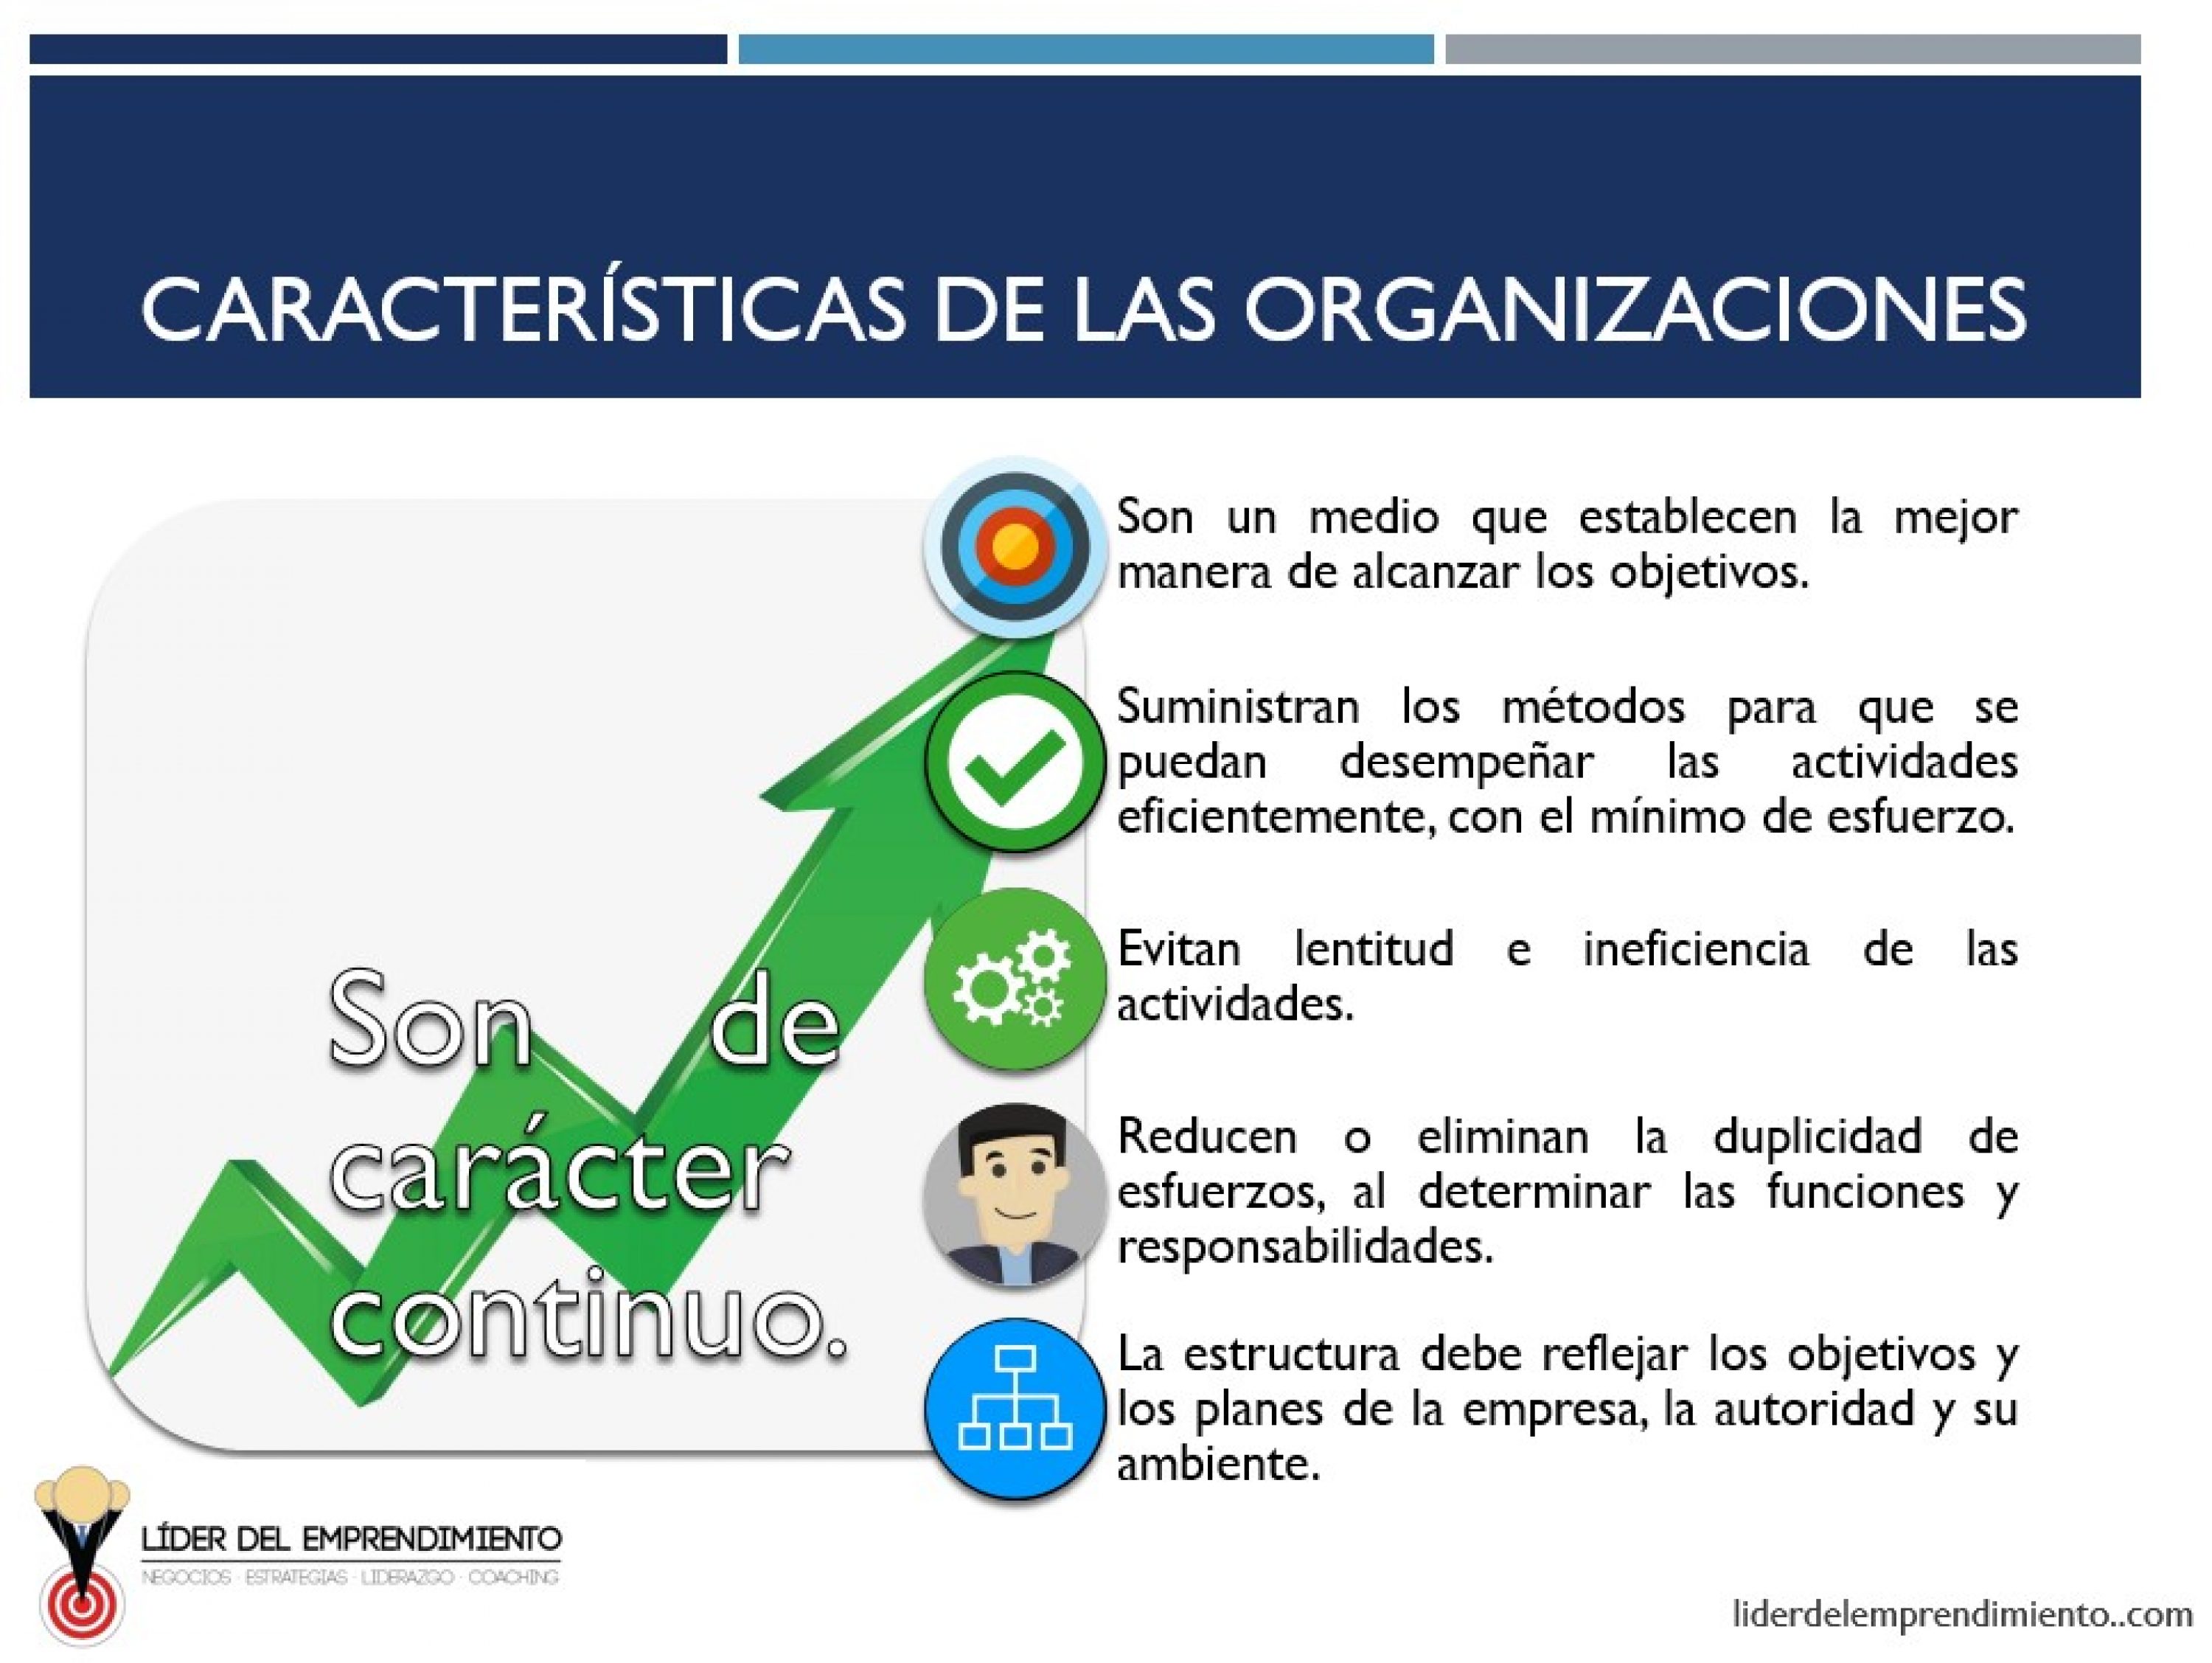 Características de las organizaciones